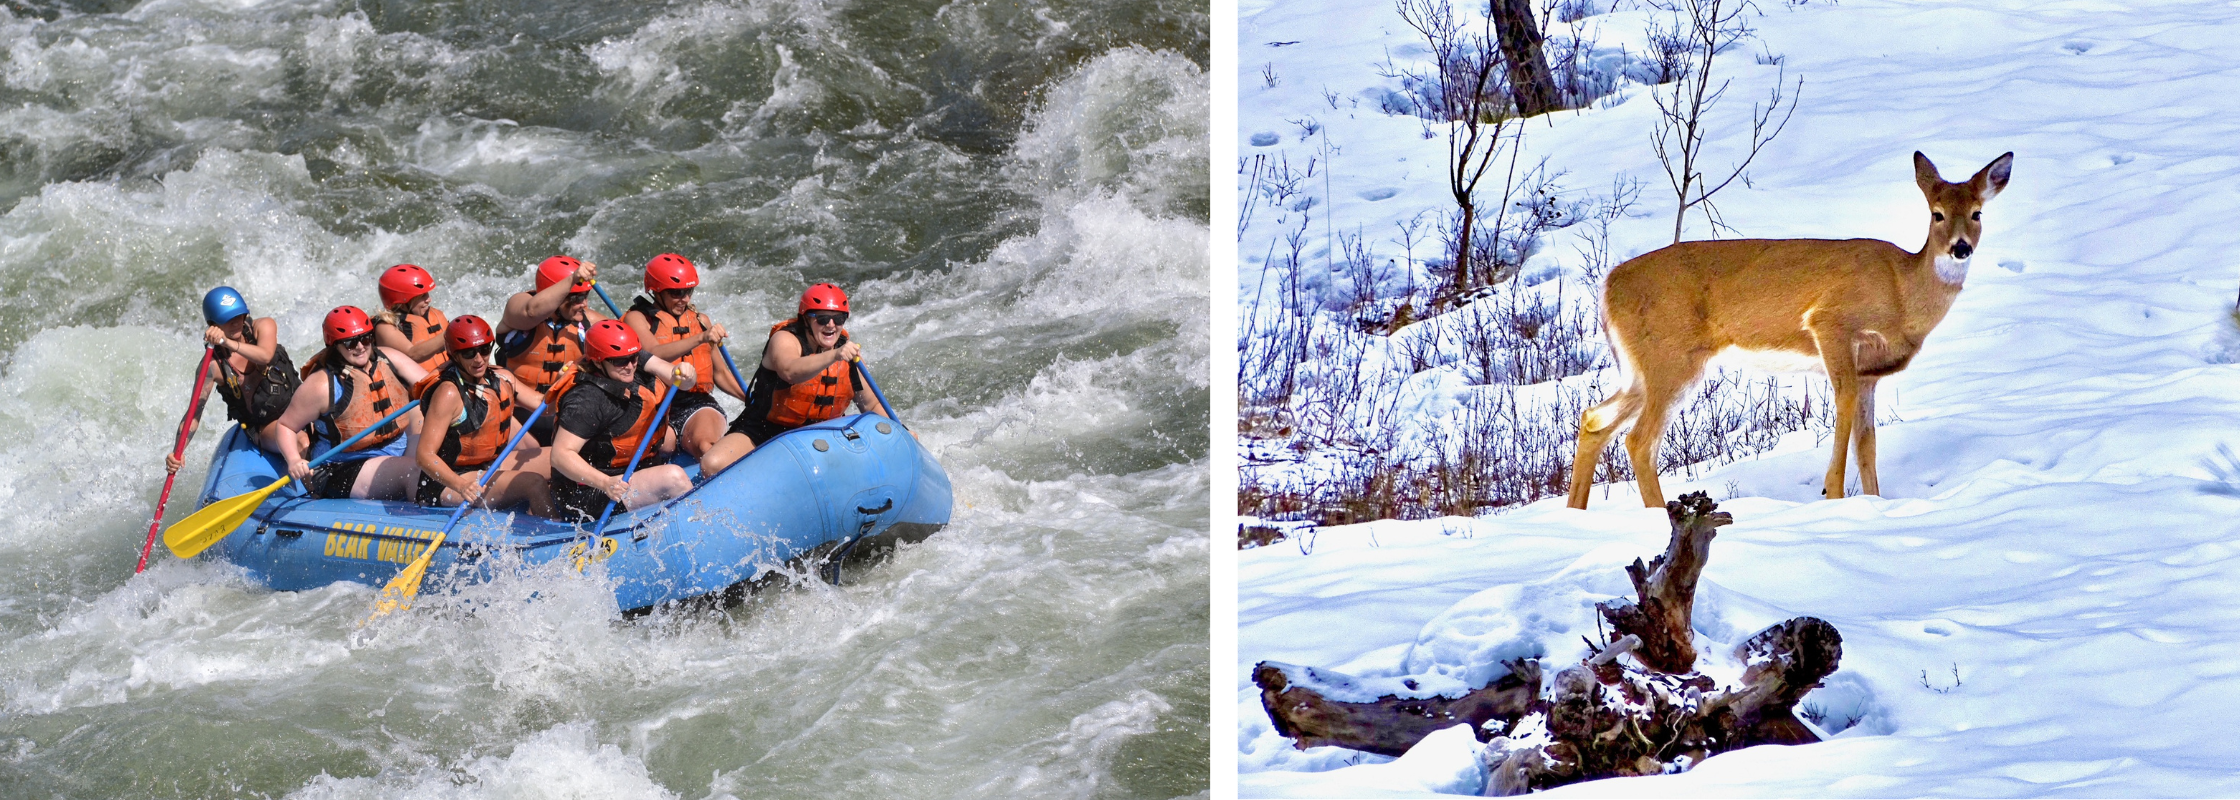 Twin Falls Kayaking and Wildlife